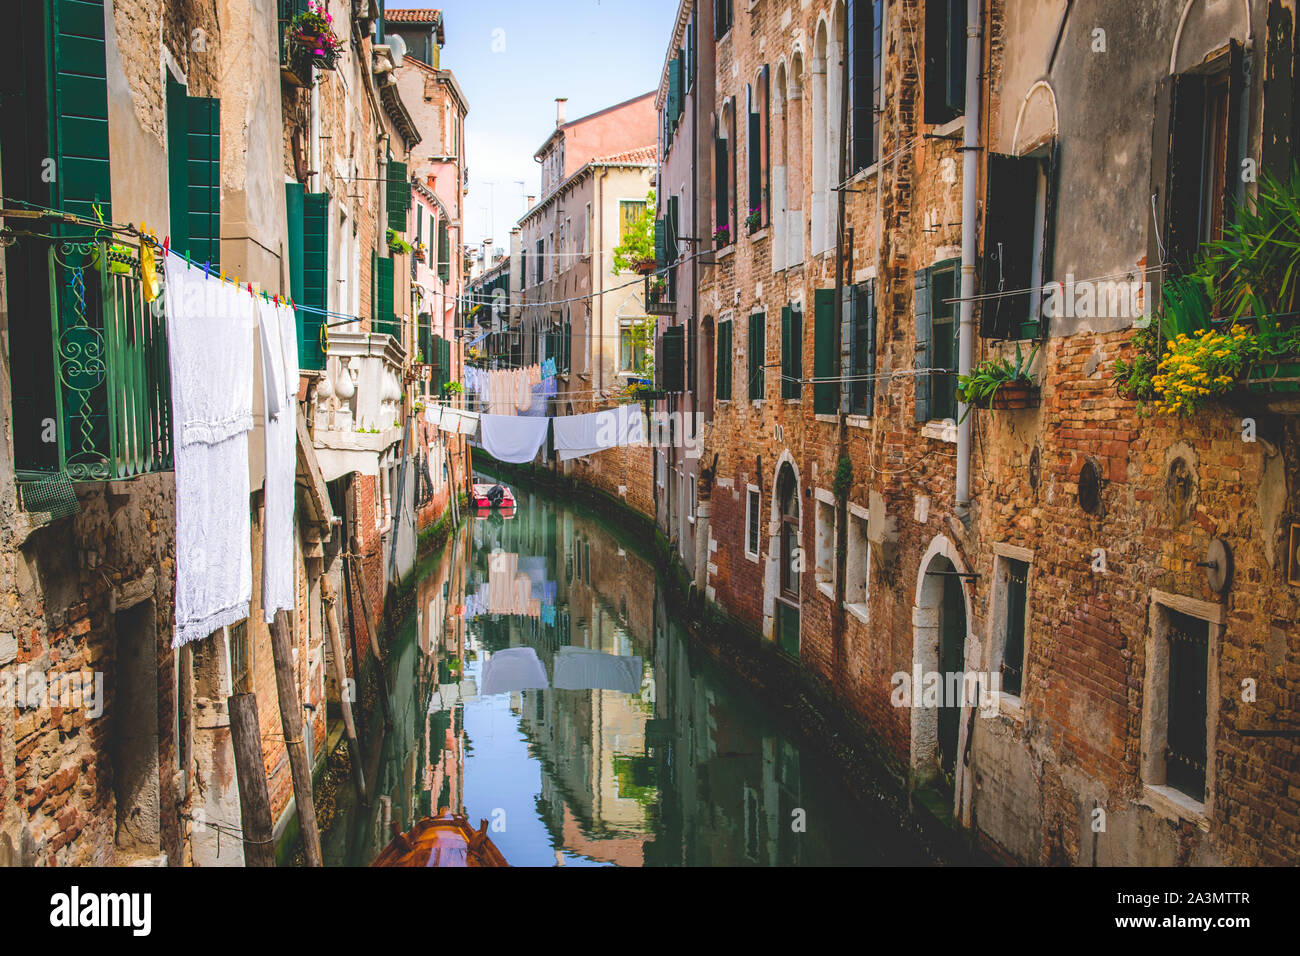 Romantischer Kanal in Venedig, rustikale Häusermauern mit Wäscheleine und Blunmen Stock Photo